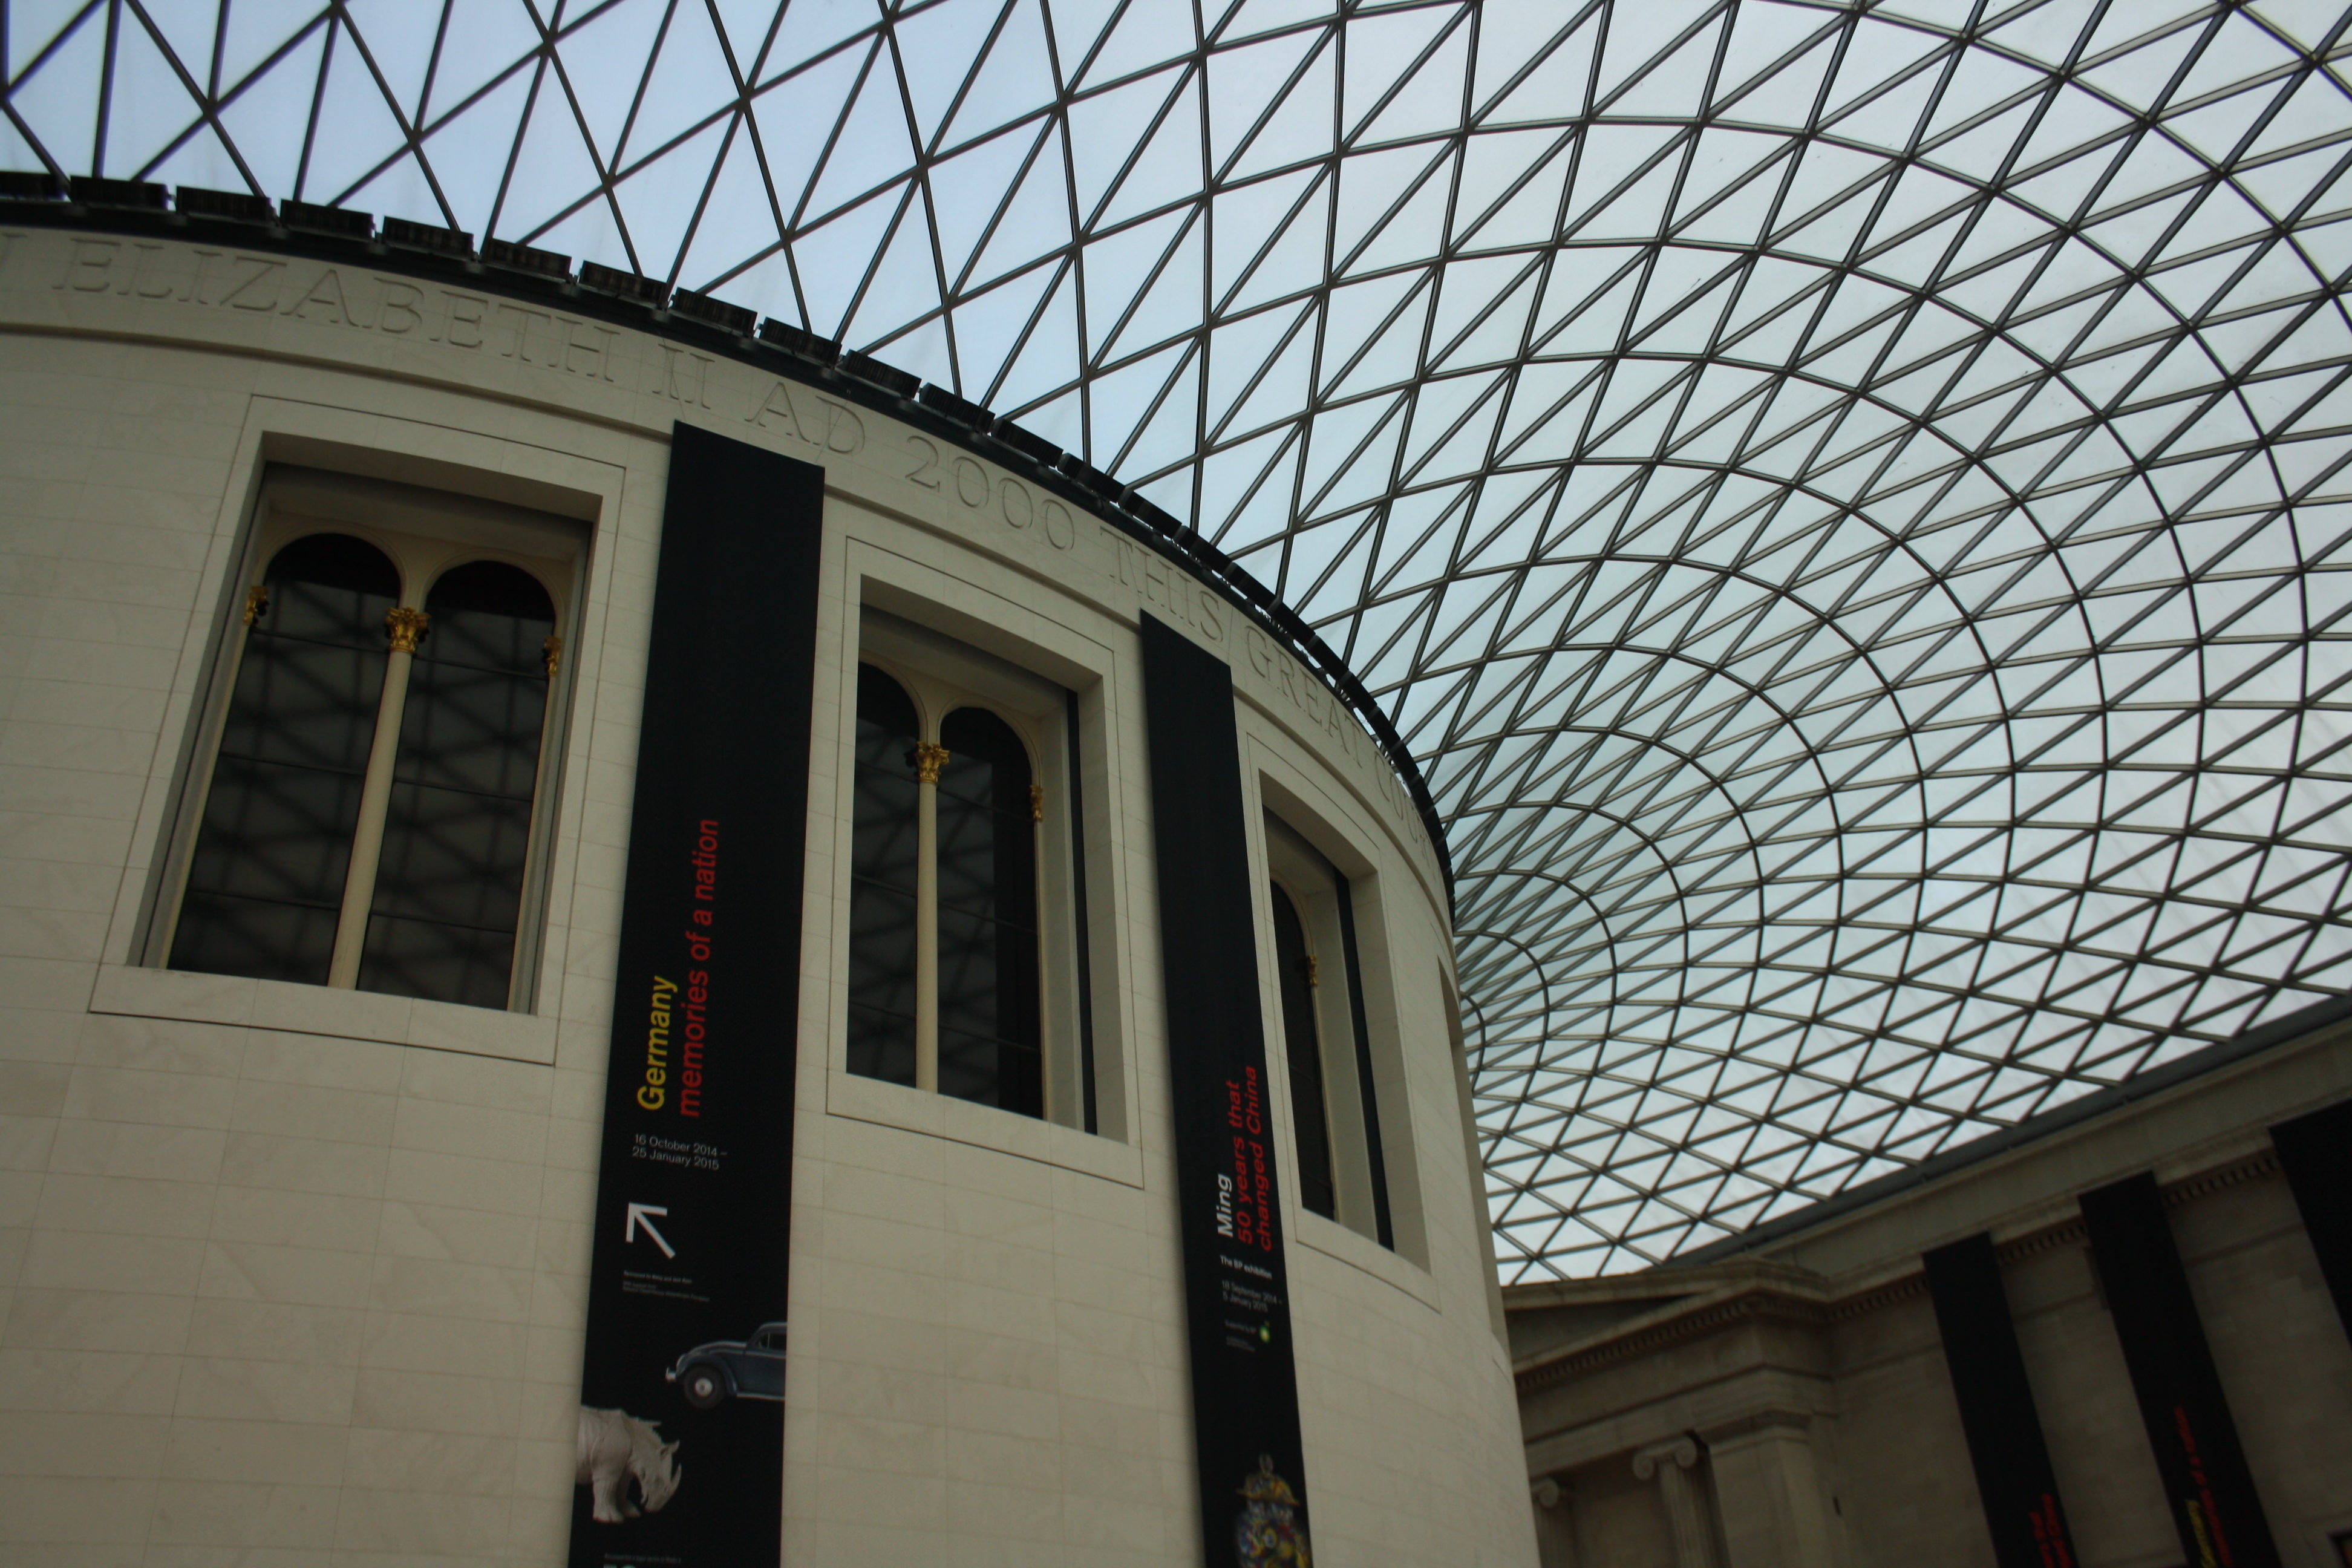 British museum